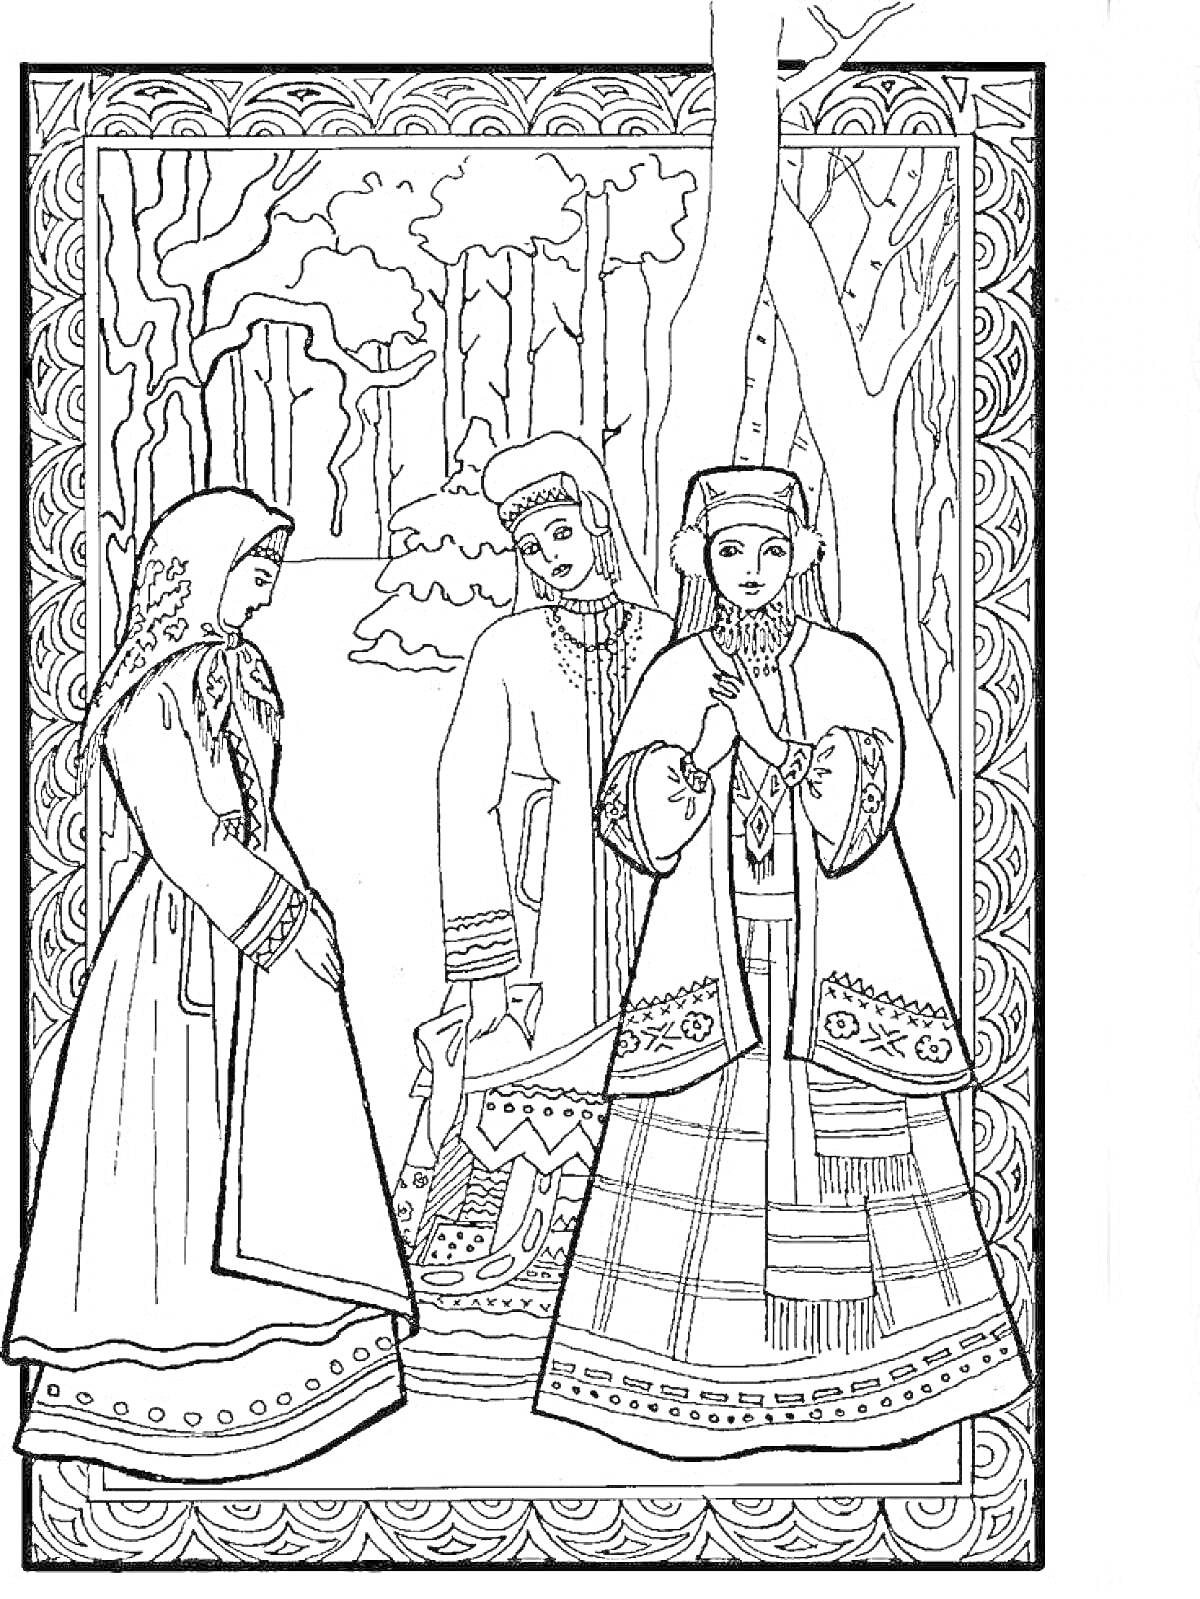 Раскраска Русский народный костюм. Три фигуры в традиционной одежде, состоящей из сарафанов, кокошников и косовороток. На фоне лесной пейзаж.